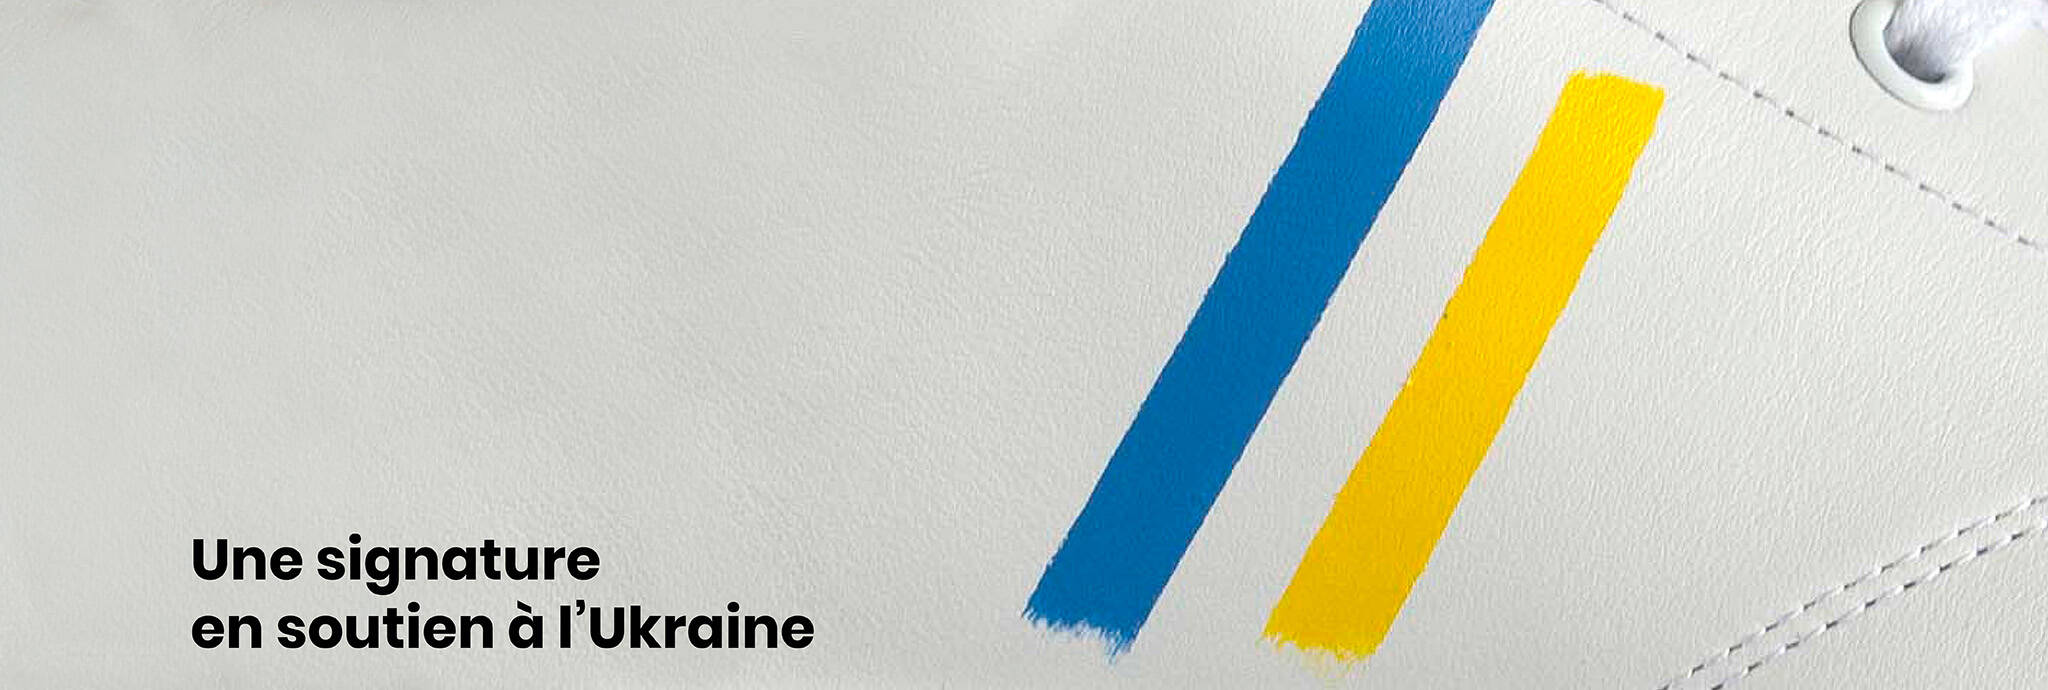 Une signature en soutien à l'Ukraine